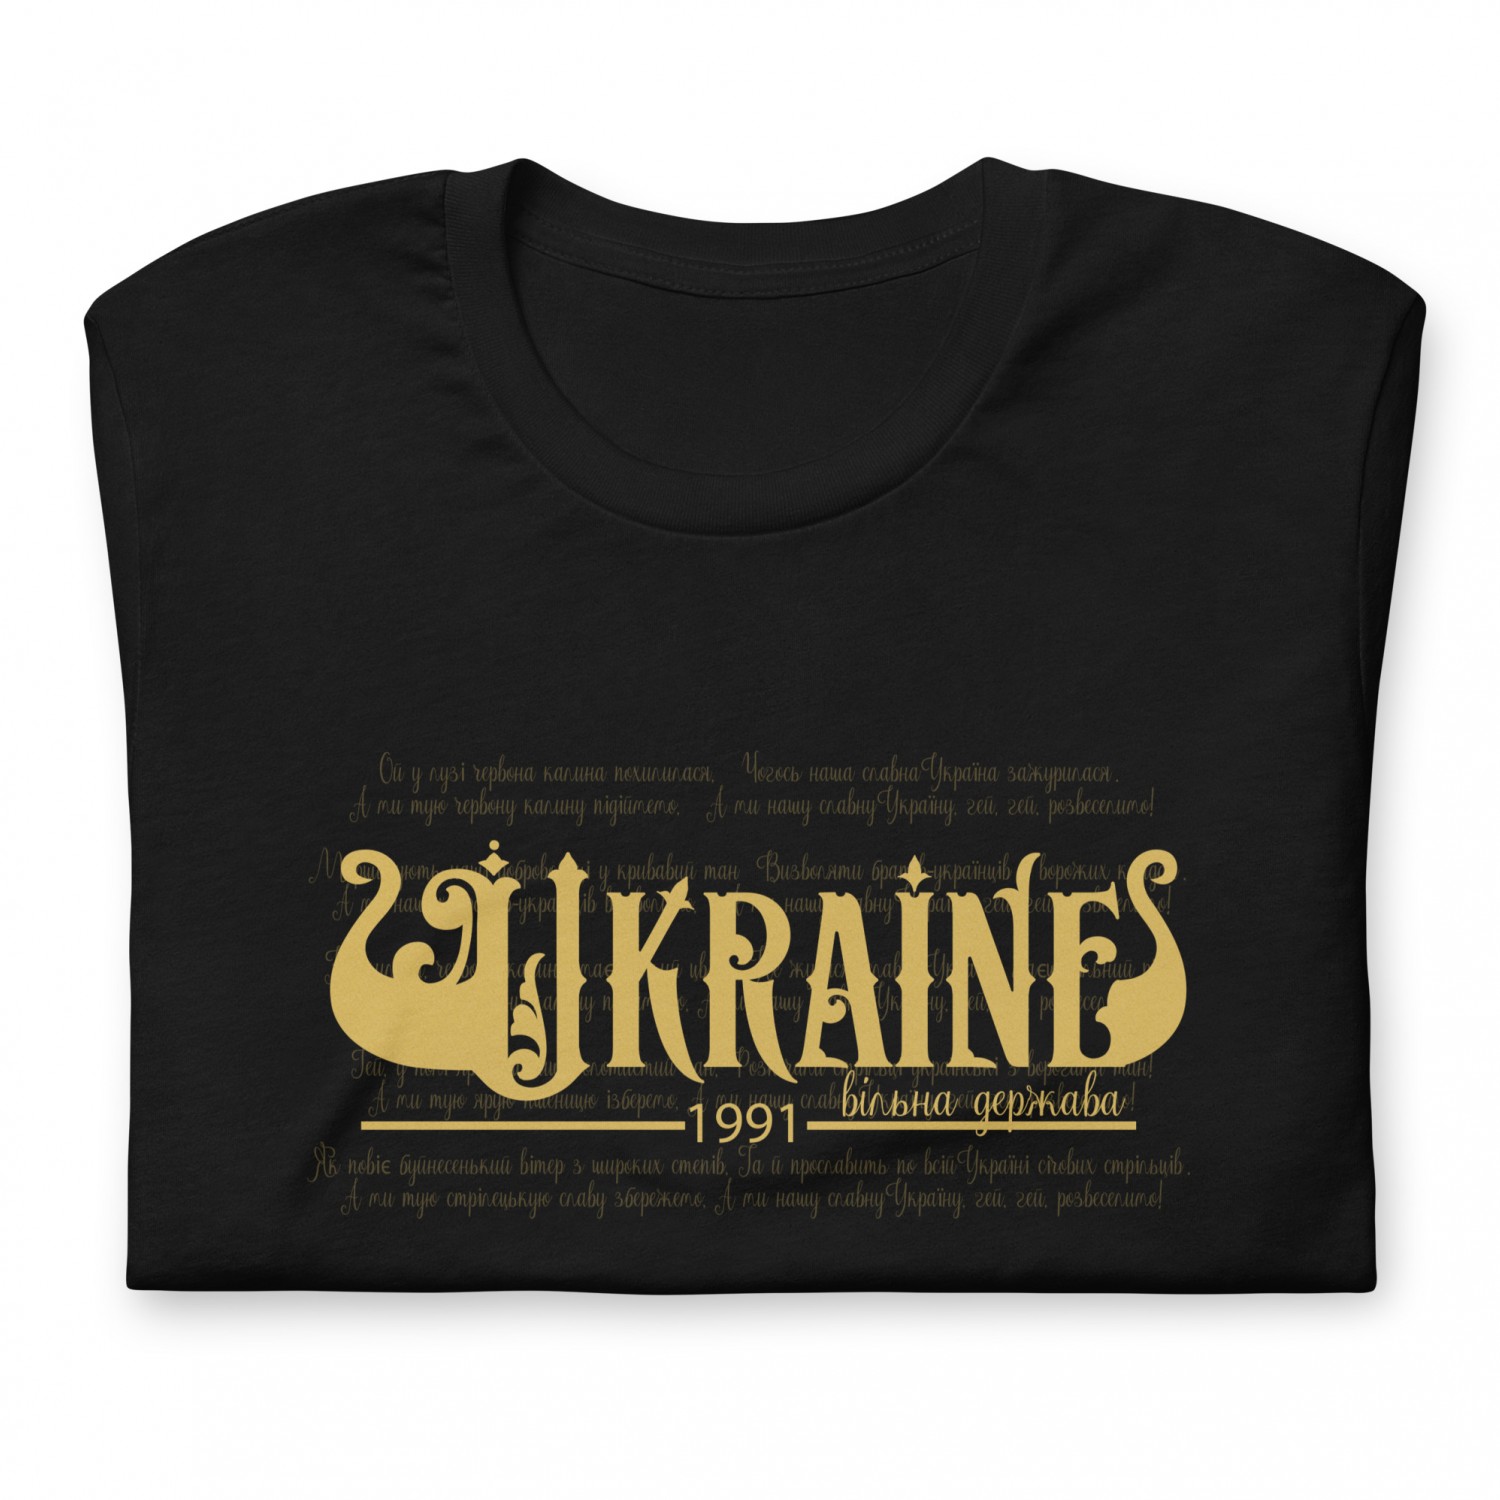 Koszulka Ukraina jest bezpłatna